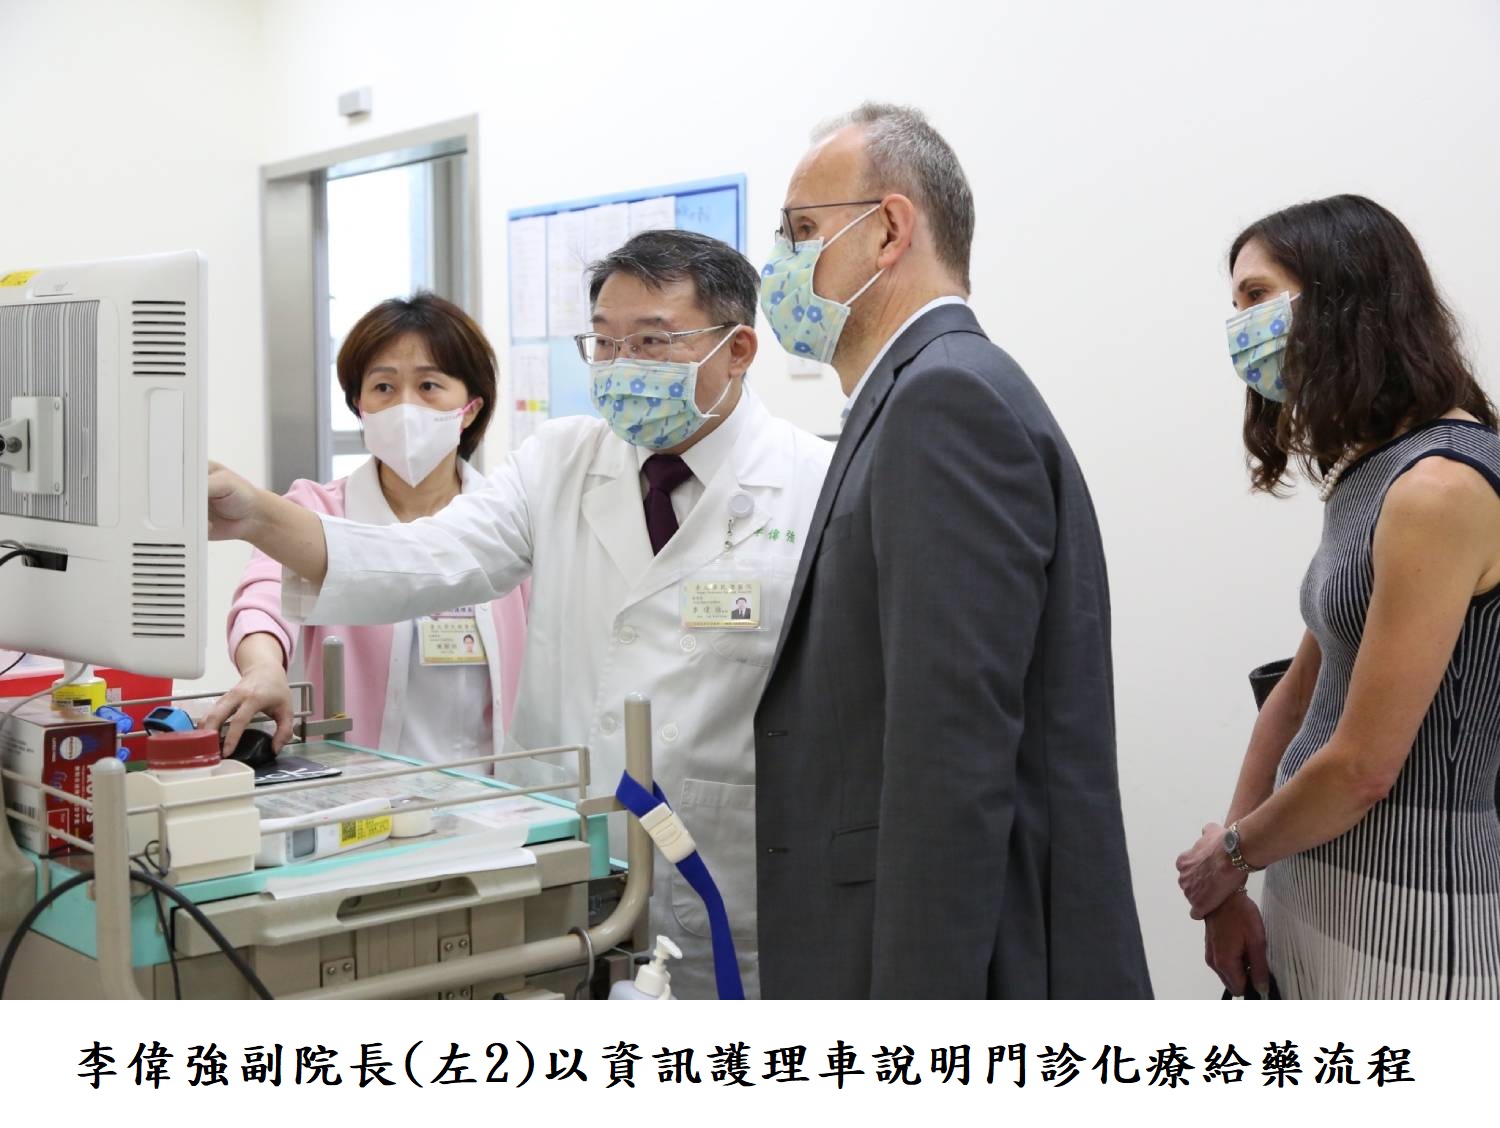 李偉強副院長(左2)以資訊護理車說明門診化療給藥流程